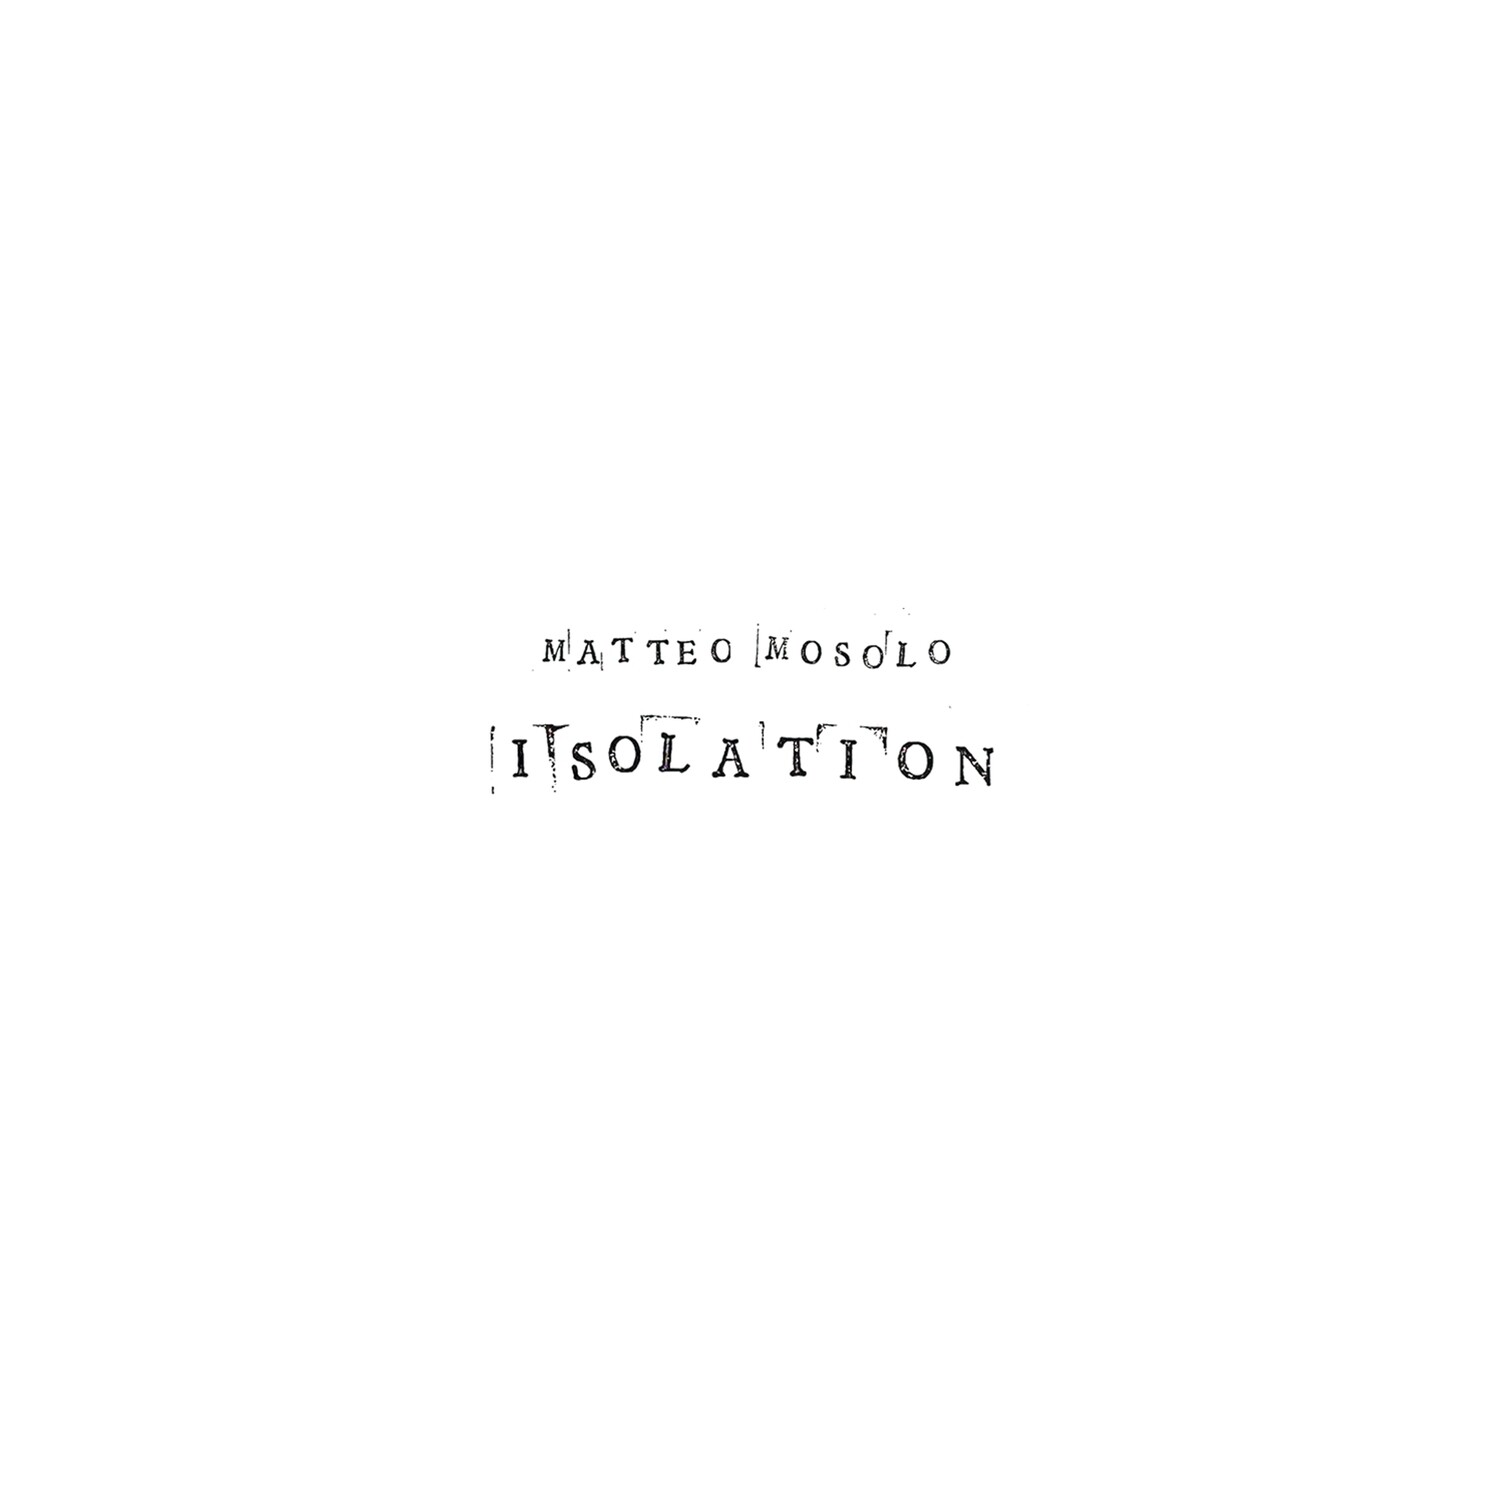 MATTEO MOSOLO «Isolation»